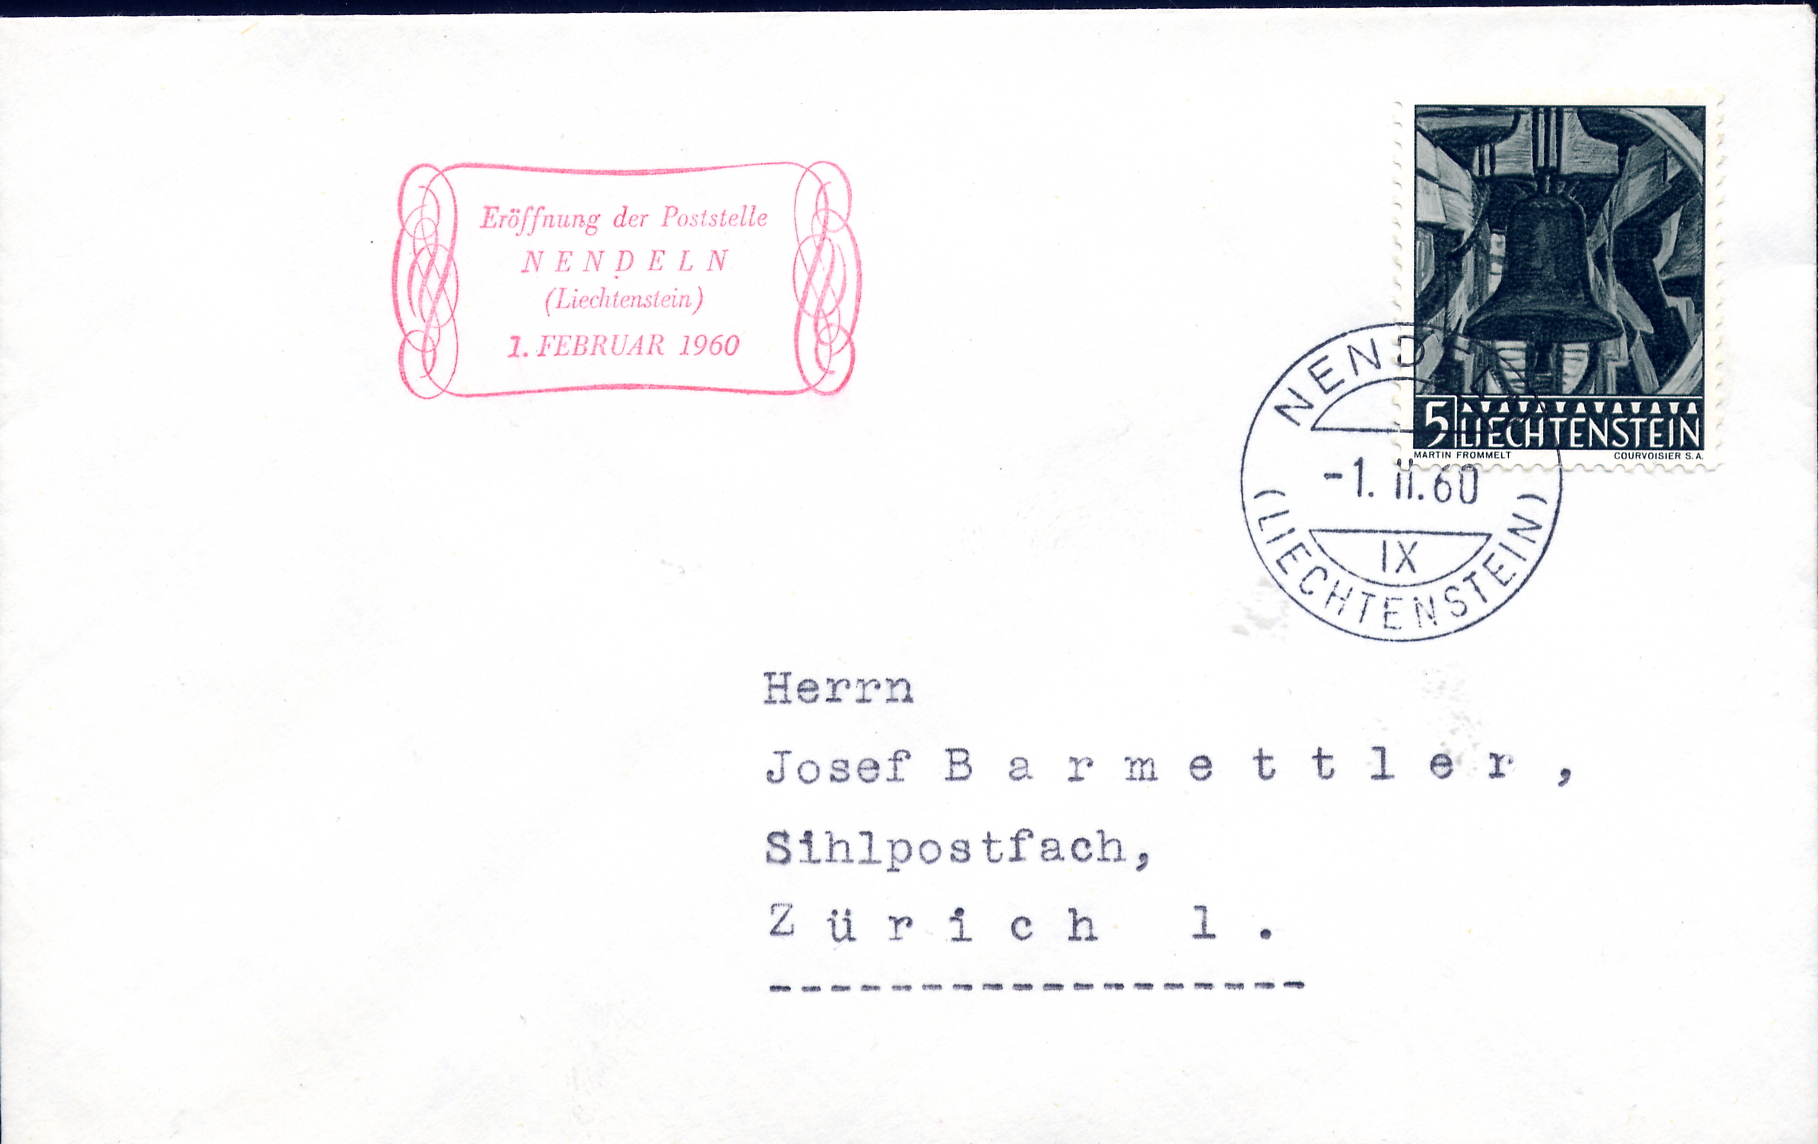 https://swiss-stamps.org/wp-content/uploads/2023/12/1960-2-Nendeln.jpg